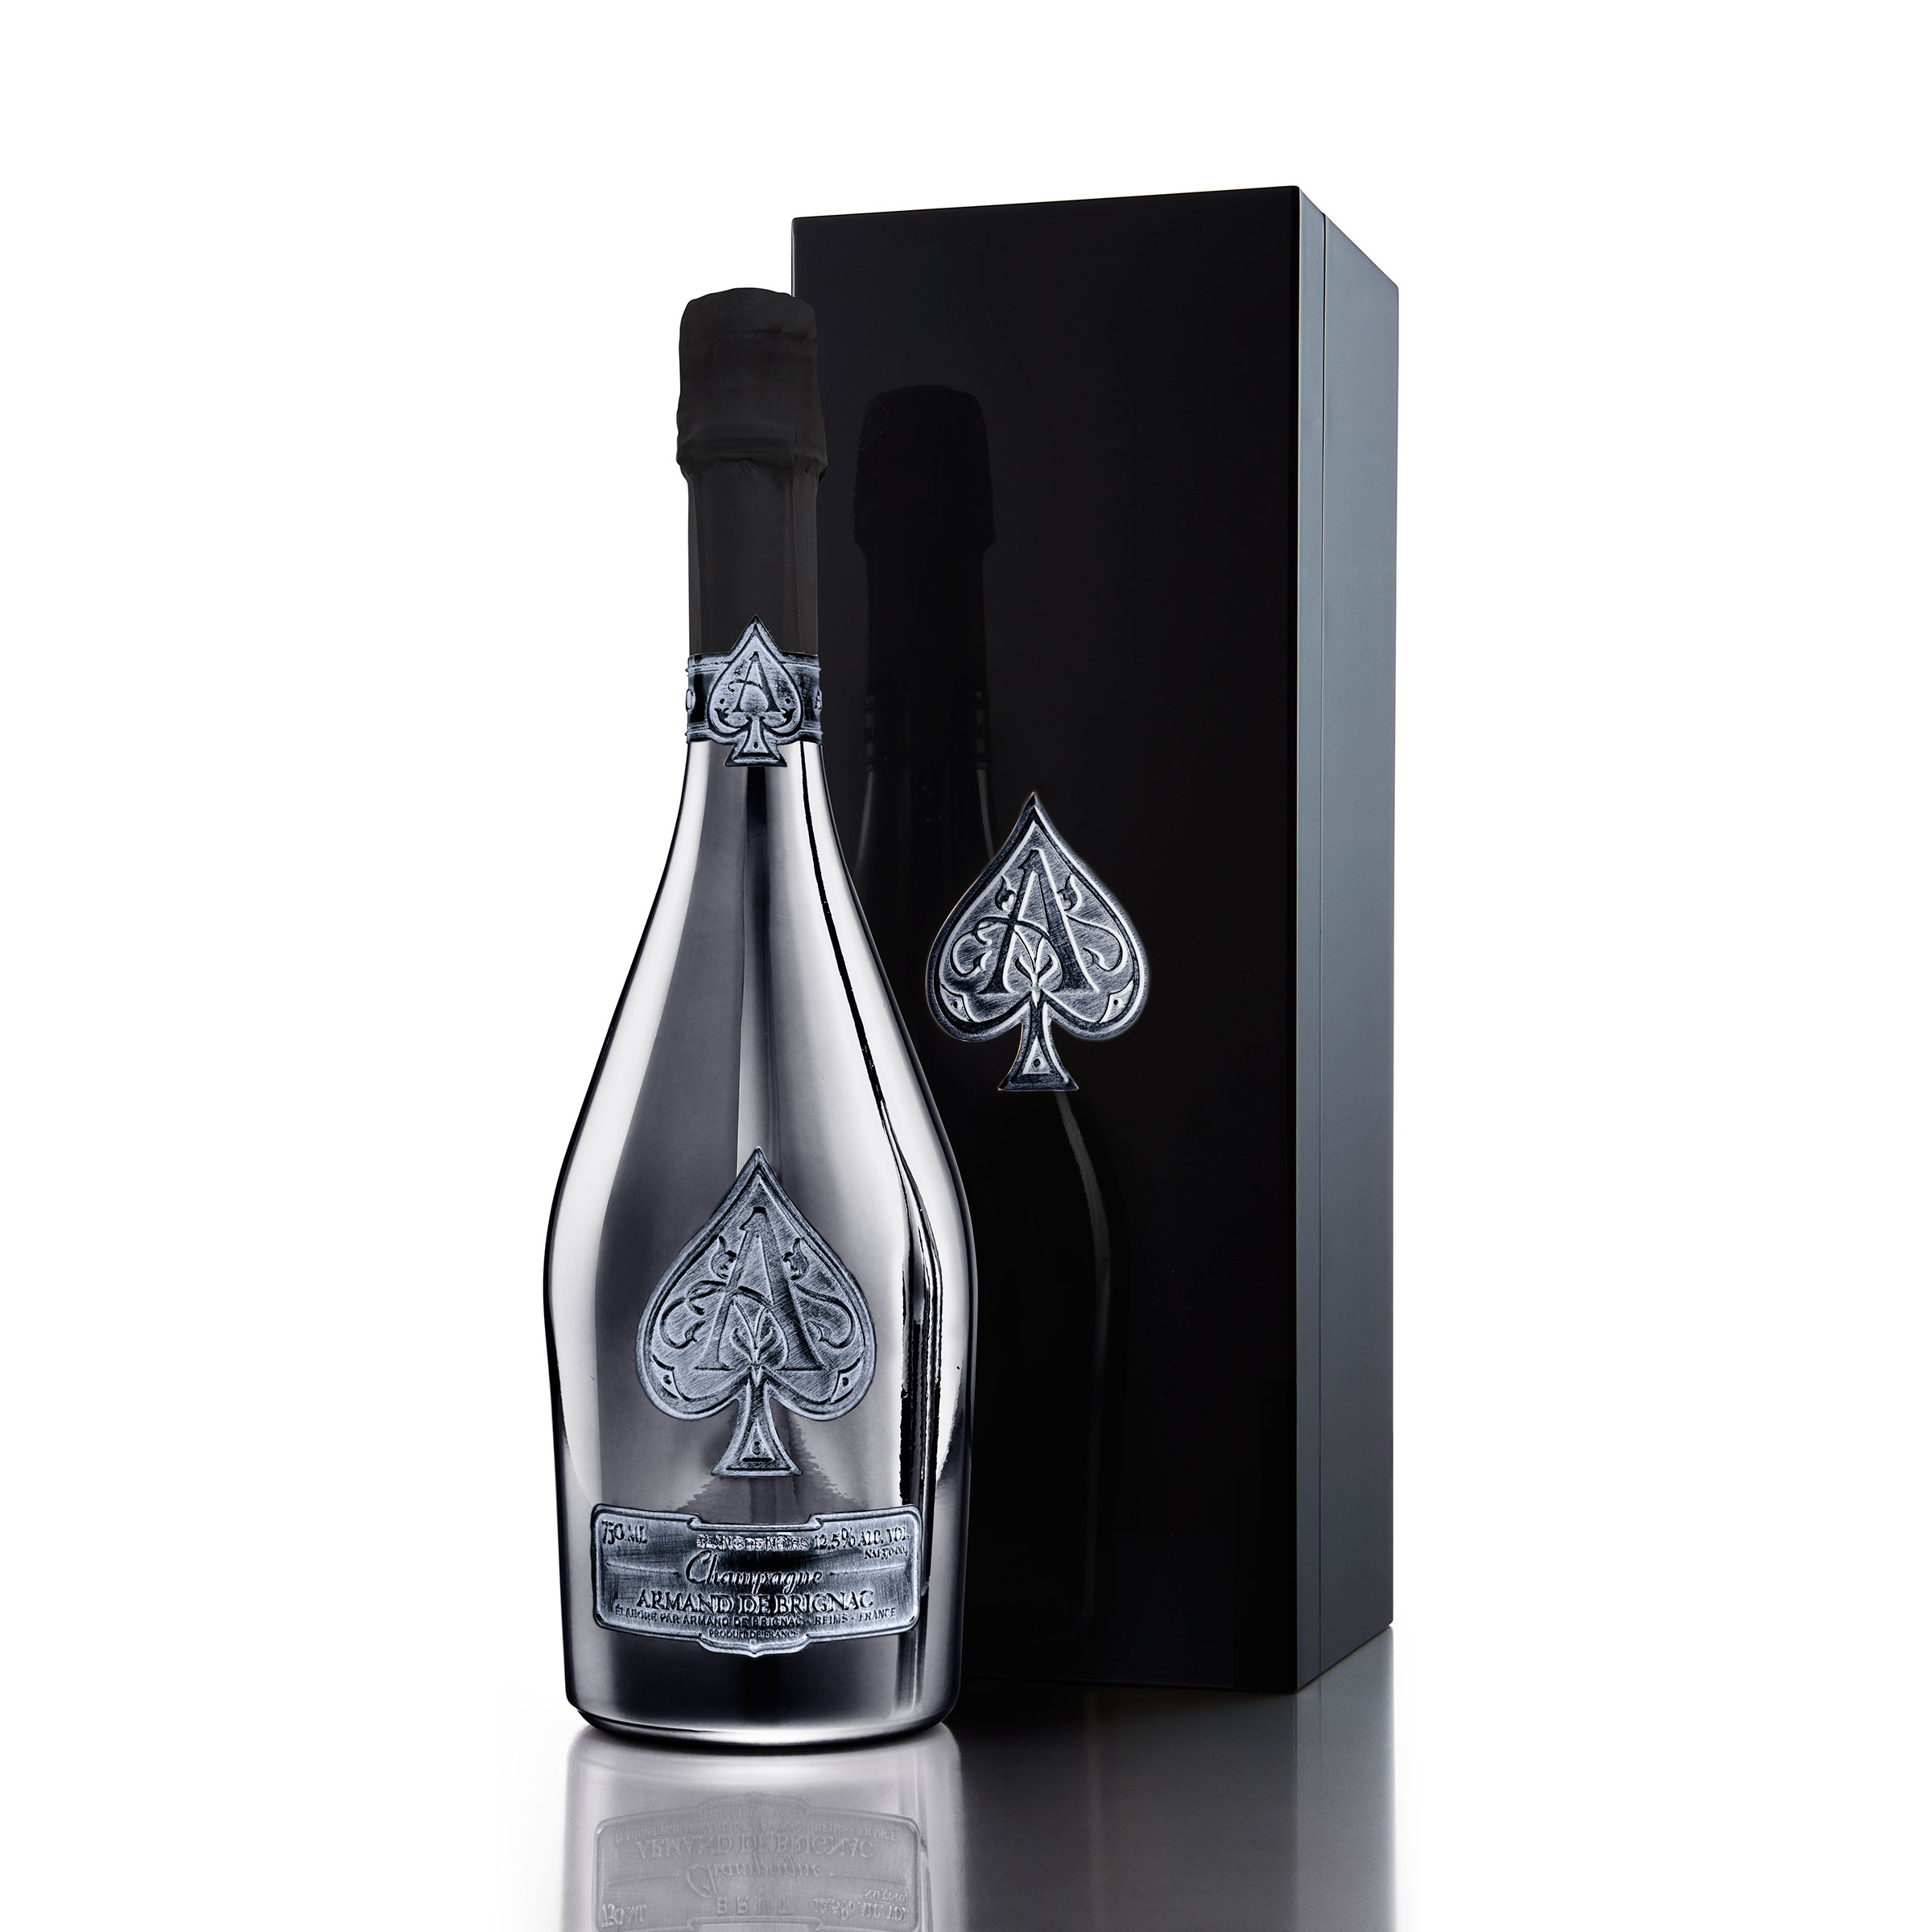 Buy Armand de Brignac 75cl Blanc de Noirs in Ace of Spades Branded Box